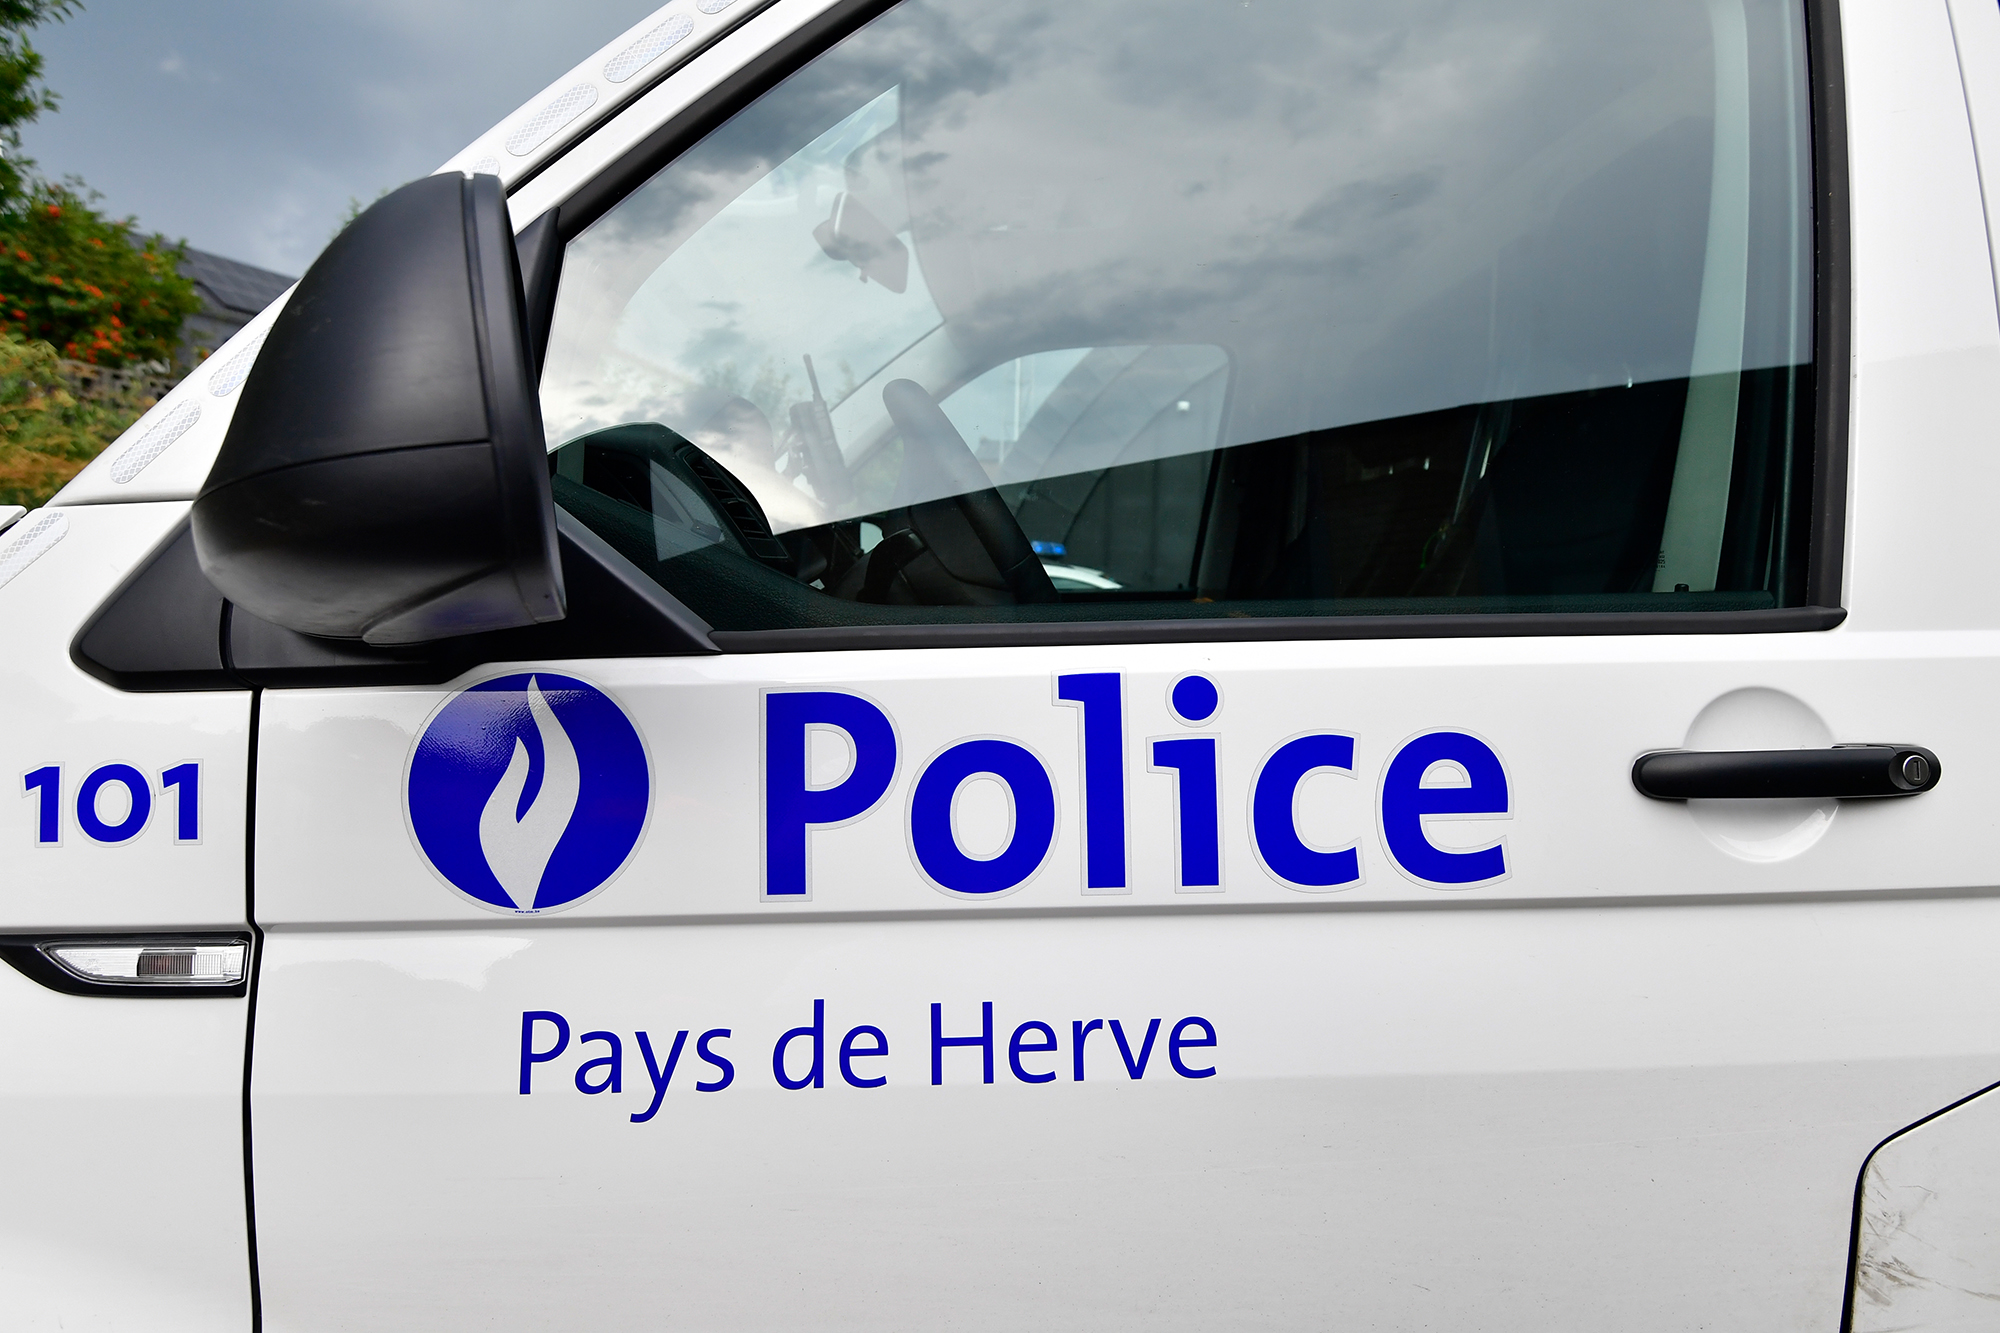 Fahrzeug der Polizeizone Herver Land / Pays de Herve